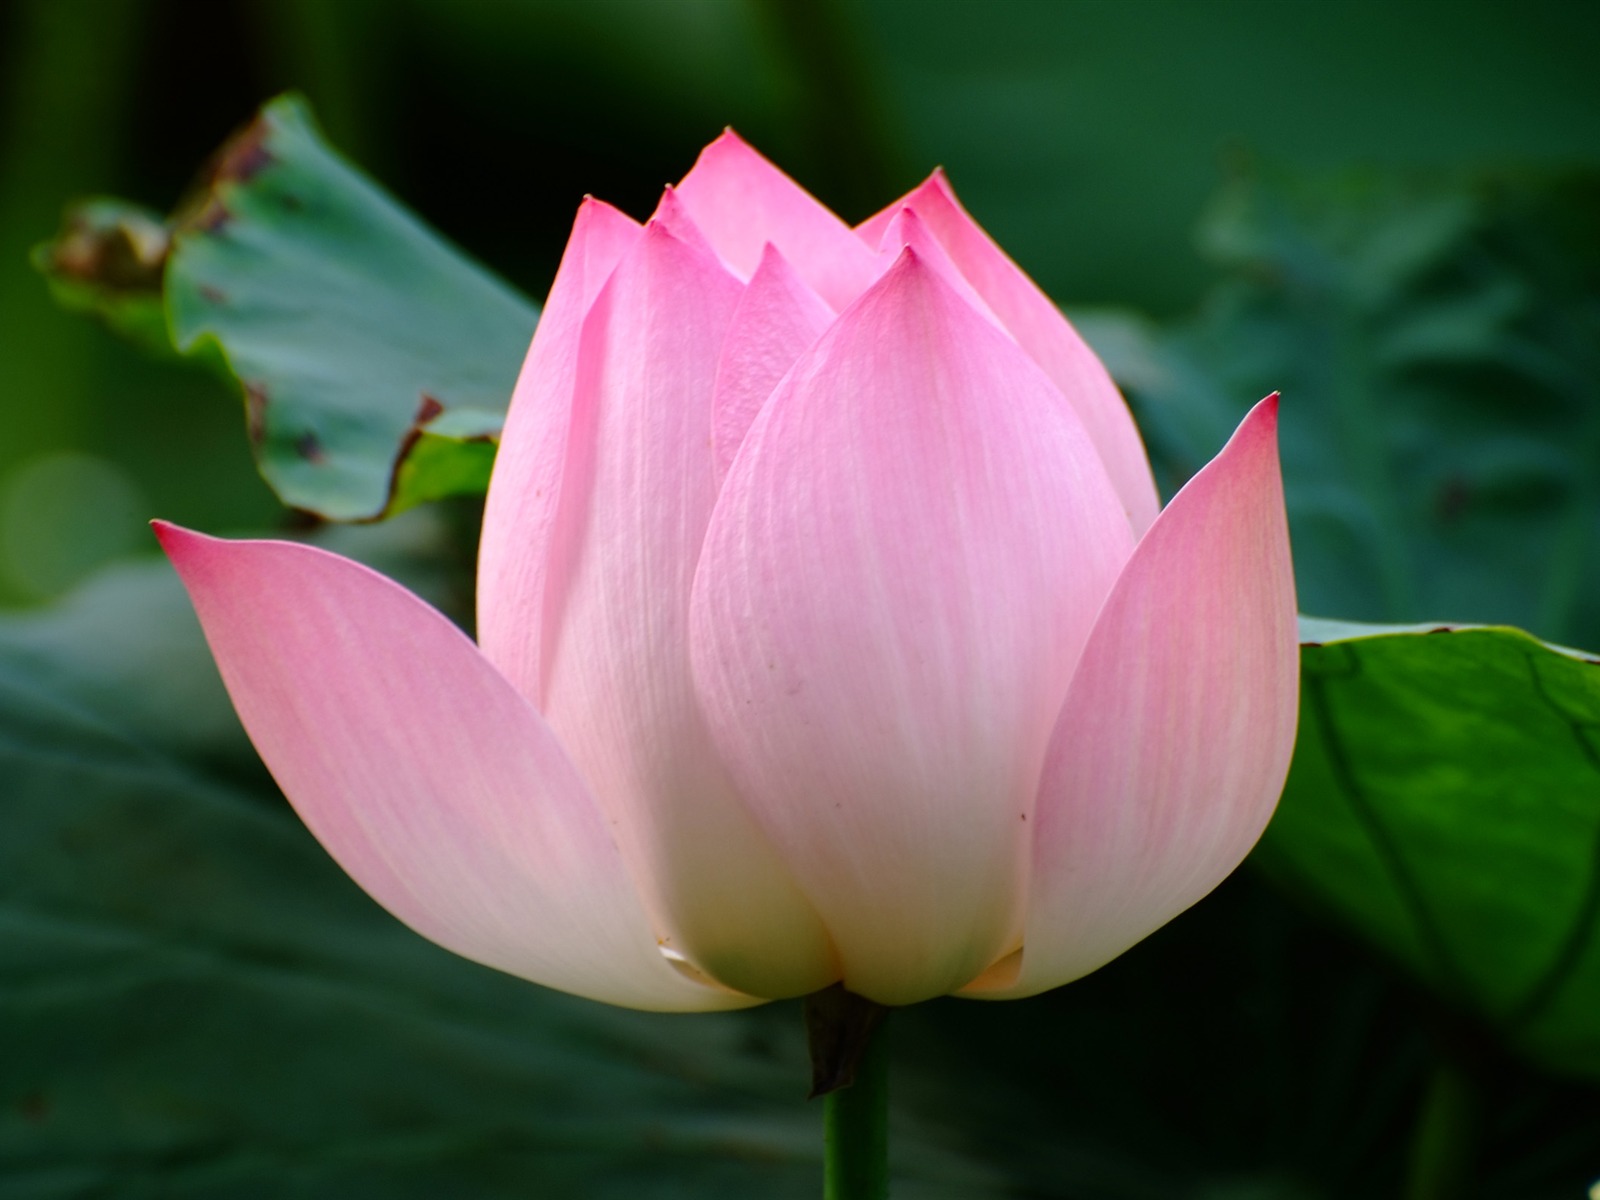 Rose Garden of the Lotus (rebar works) #6 - 1600x1200